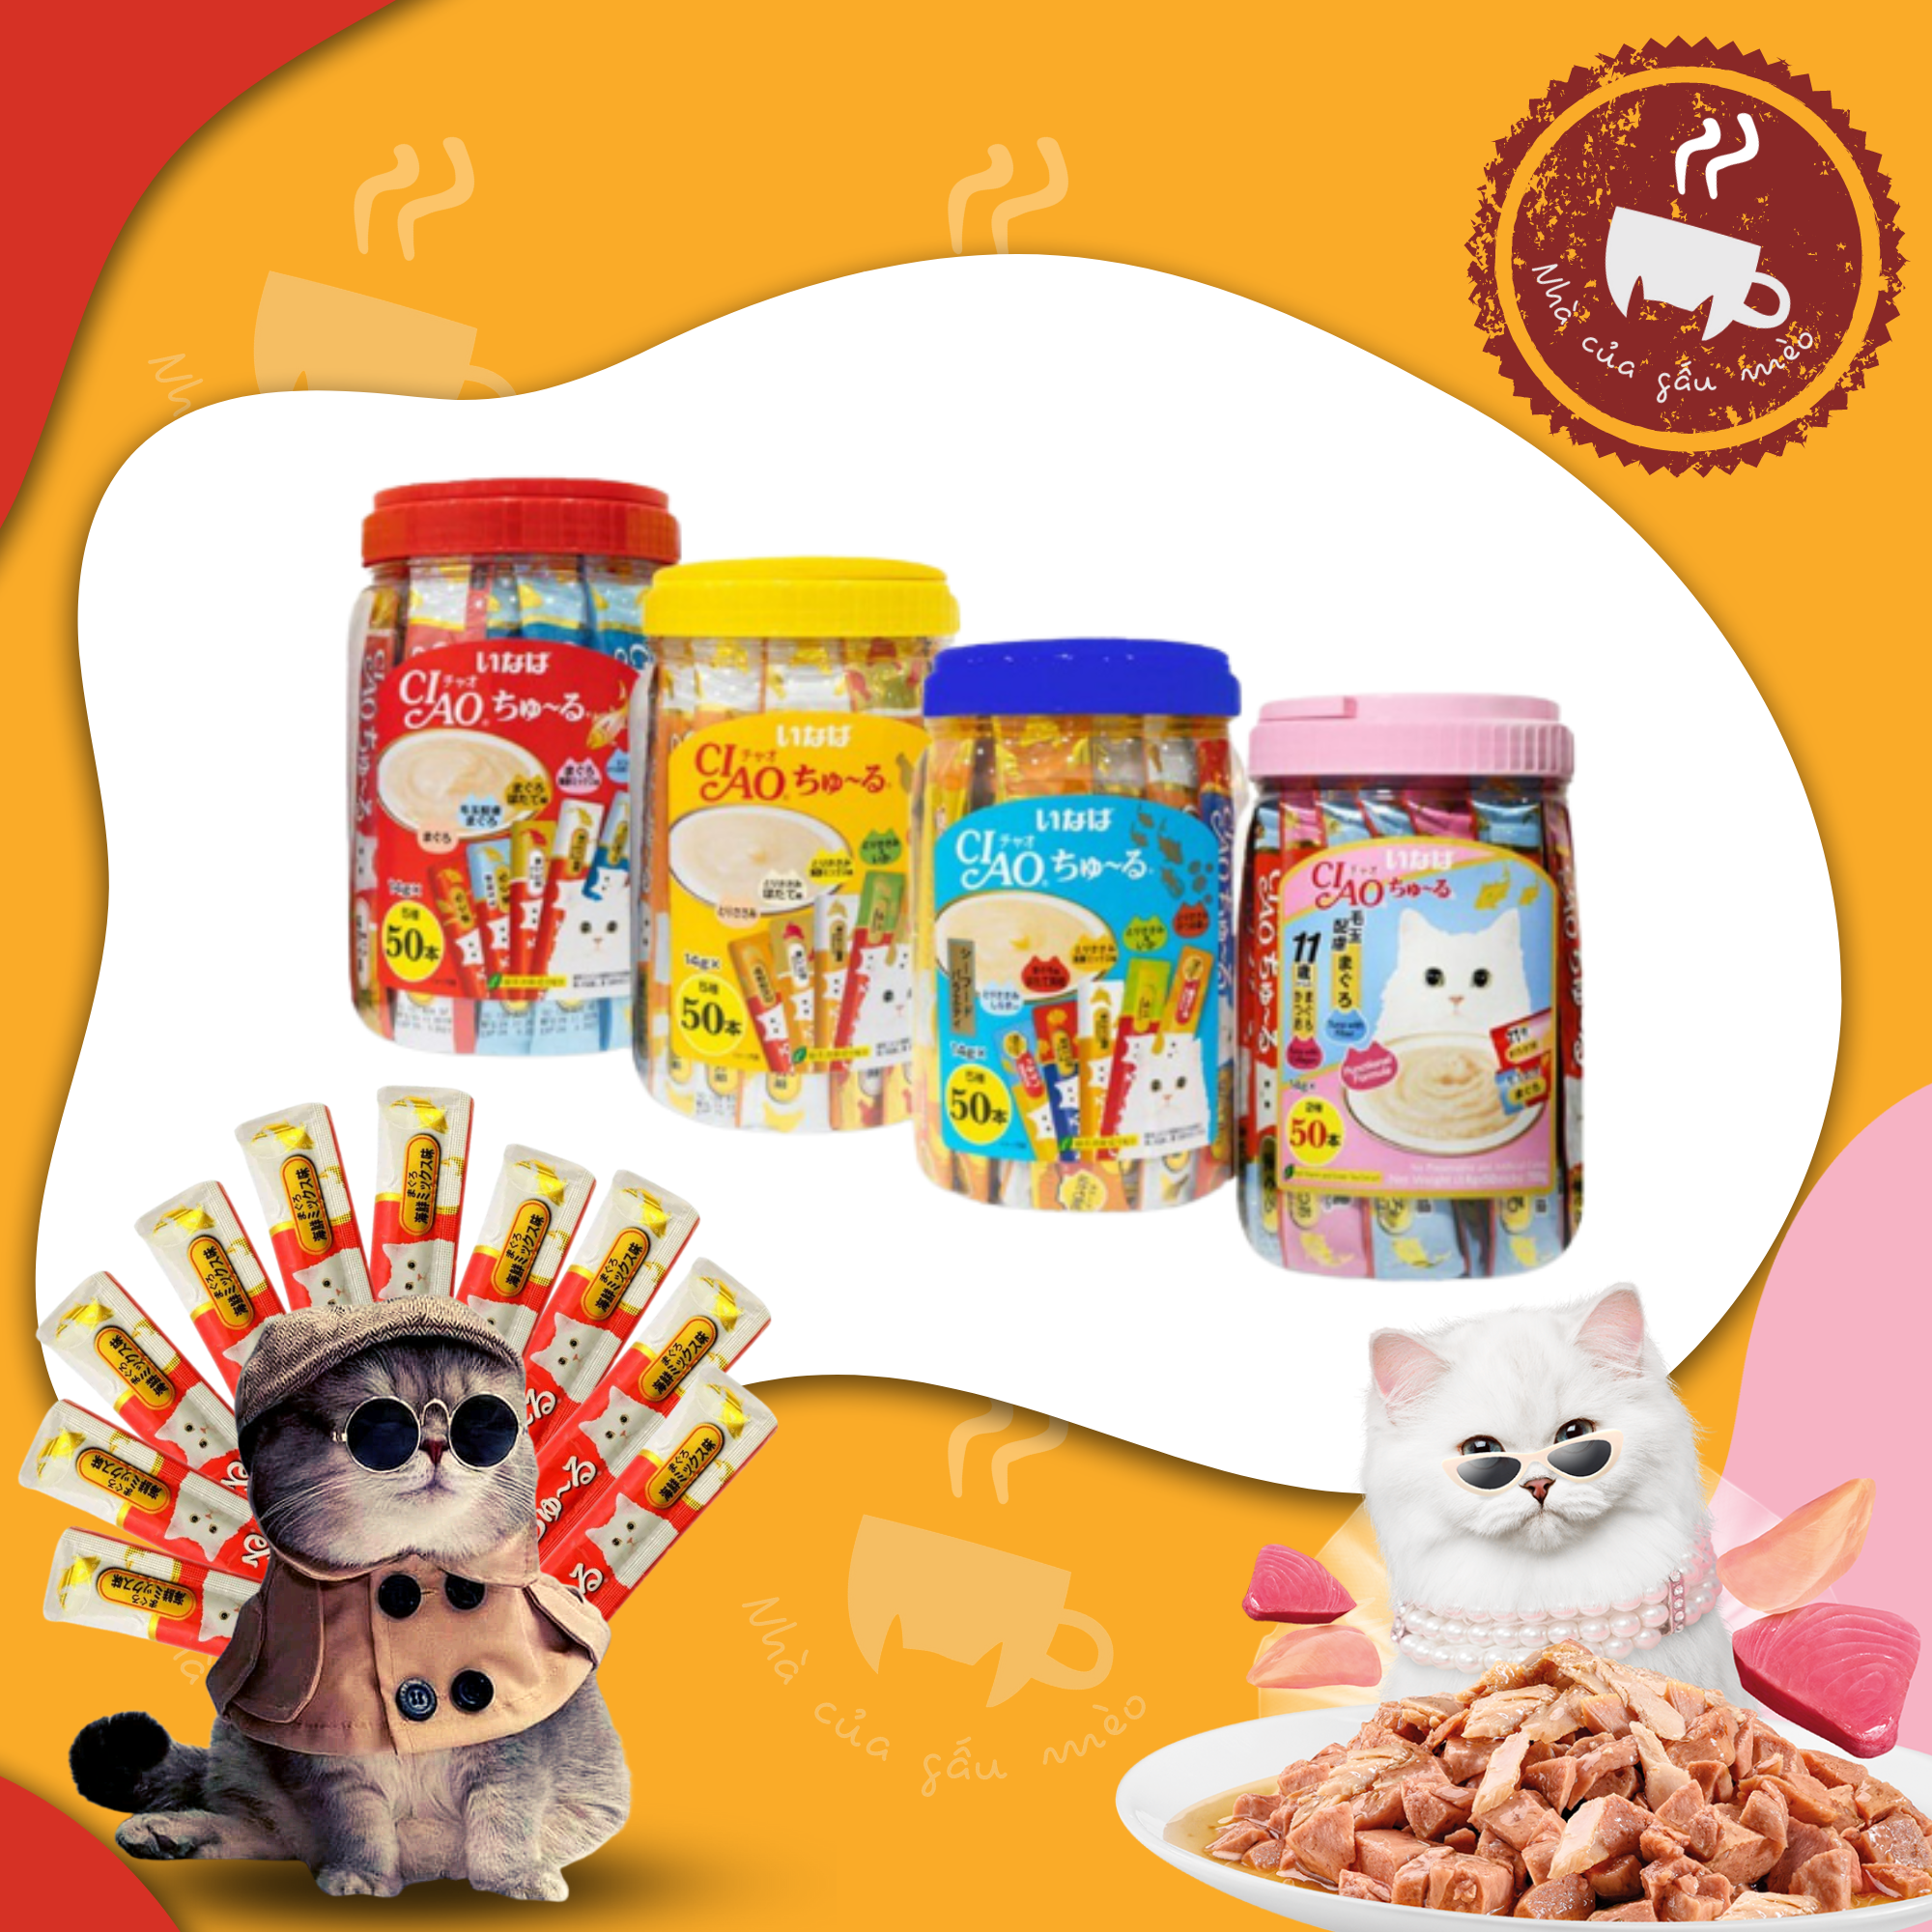 Súp thưởng/Snack thức ăn Ciao Thái Lan cho mèo - hũ 50 thanh